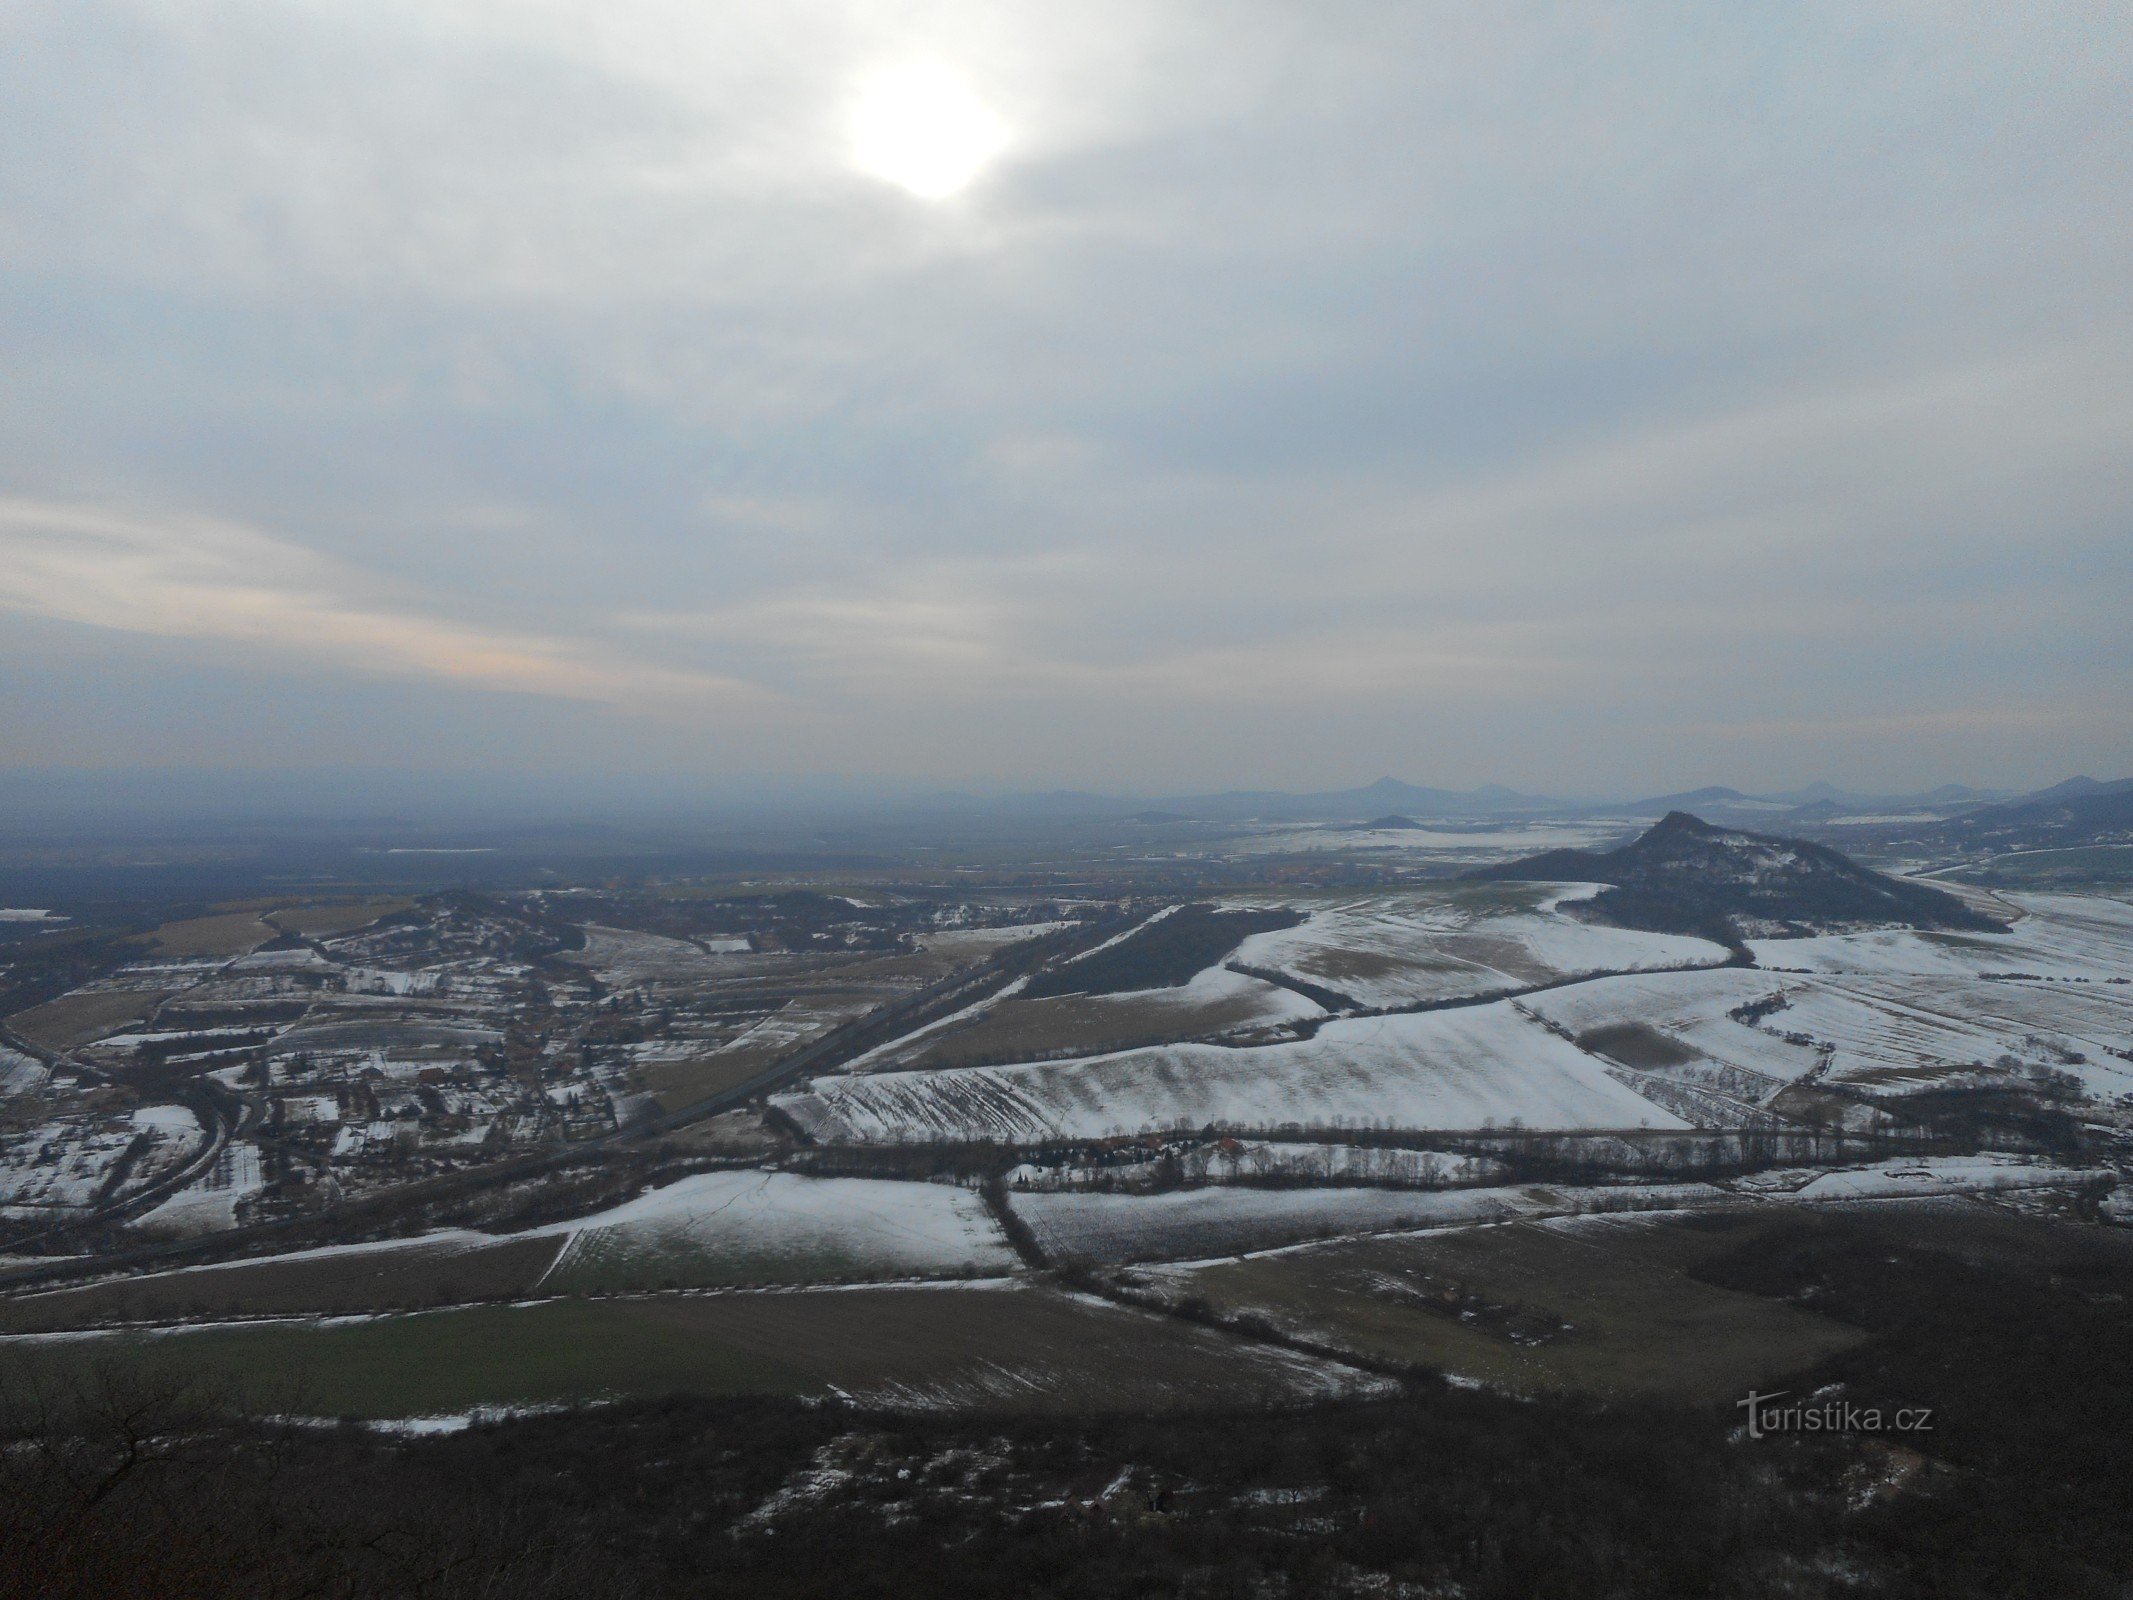 ..., au sud, à droite on peut voir la colline de Vršetín.